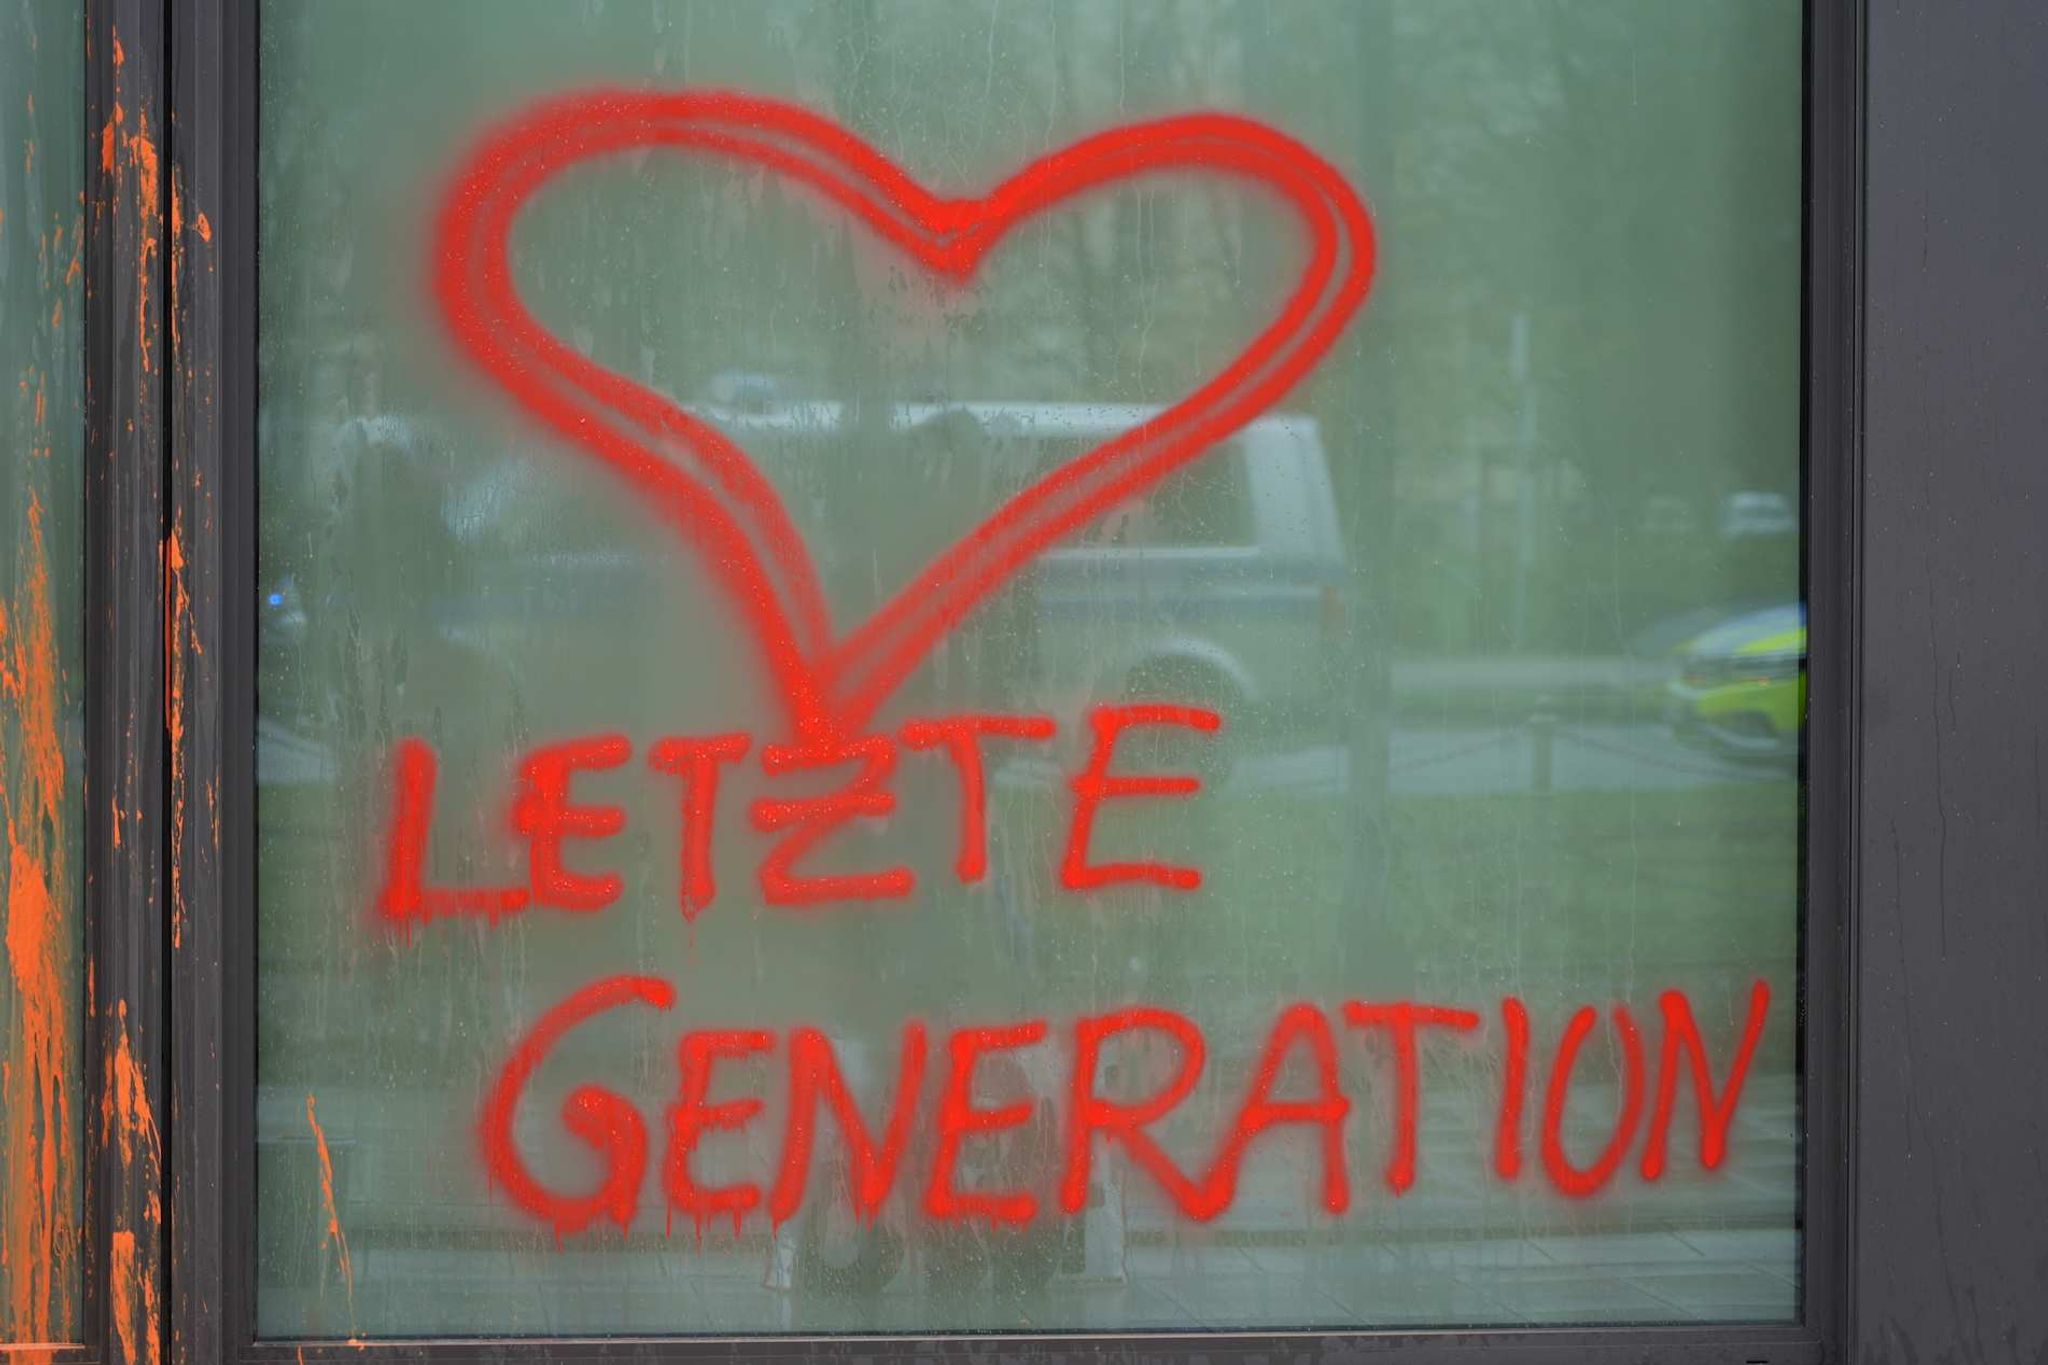 Aktivisten der Gruppierung «Letzte Generation» haben mit Farbe ein Herz an ein Fenster gemalt.